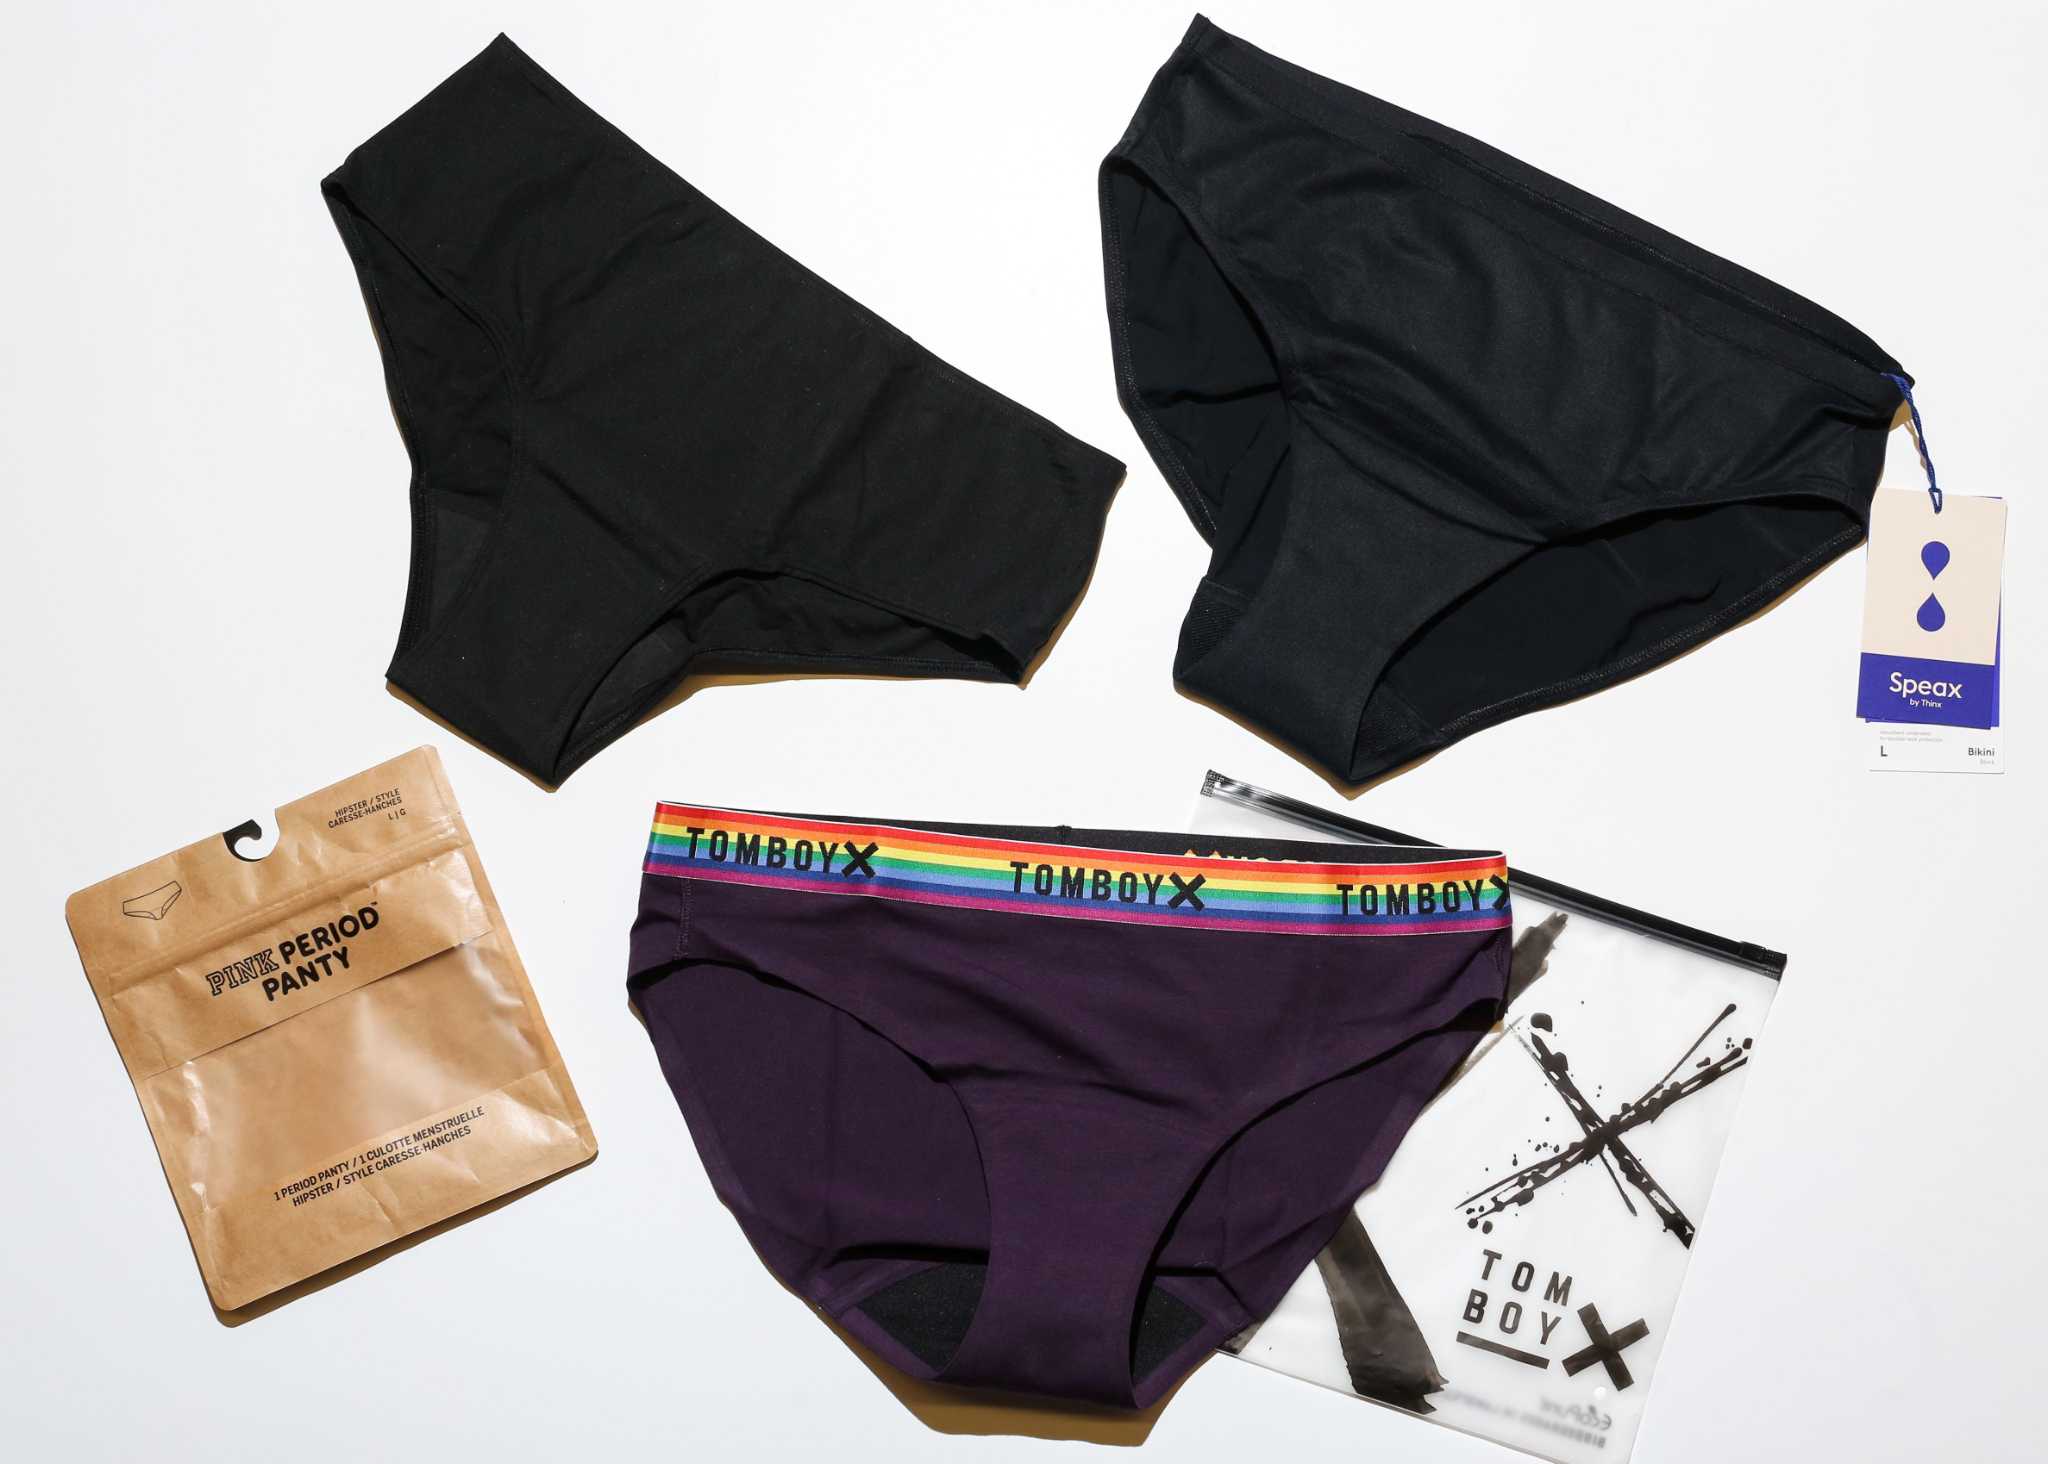 Pads for boxers, Period underwear, Menstrual underwear